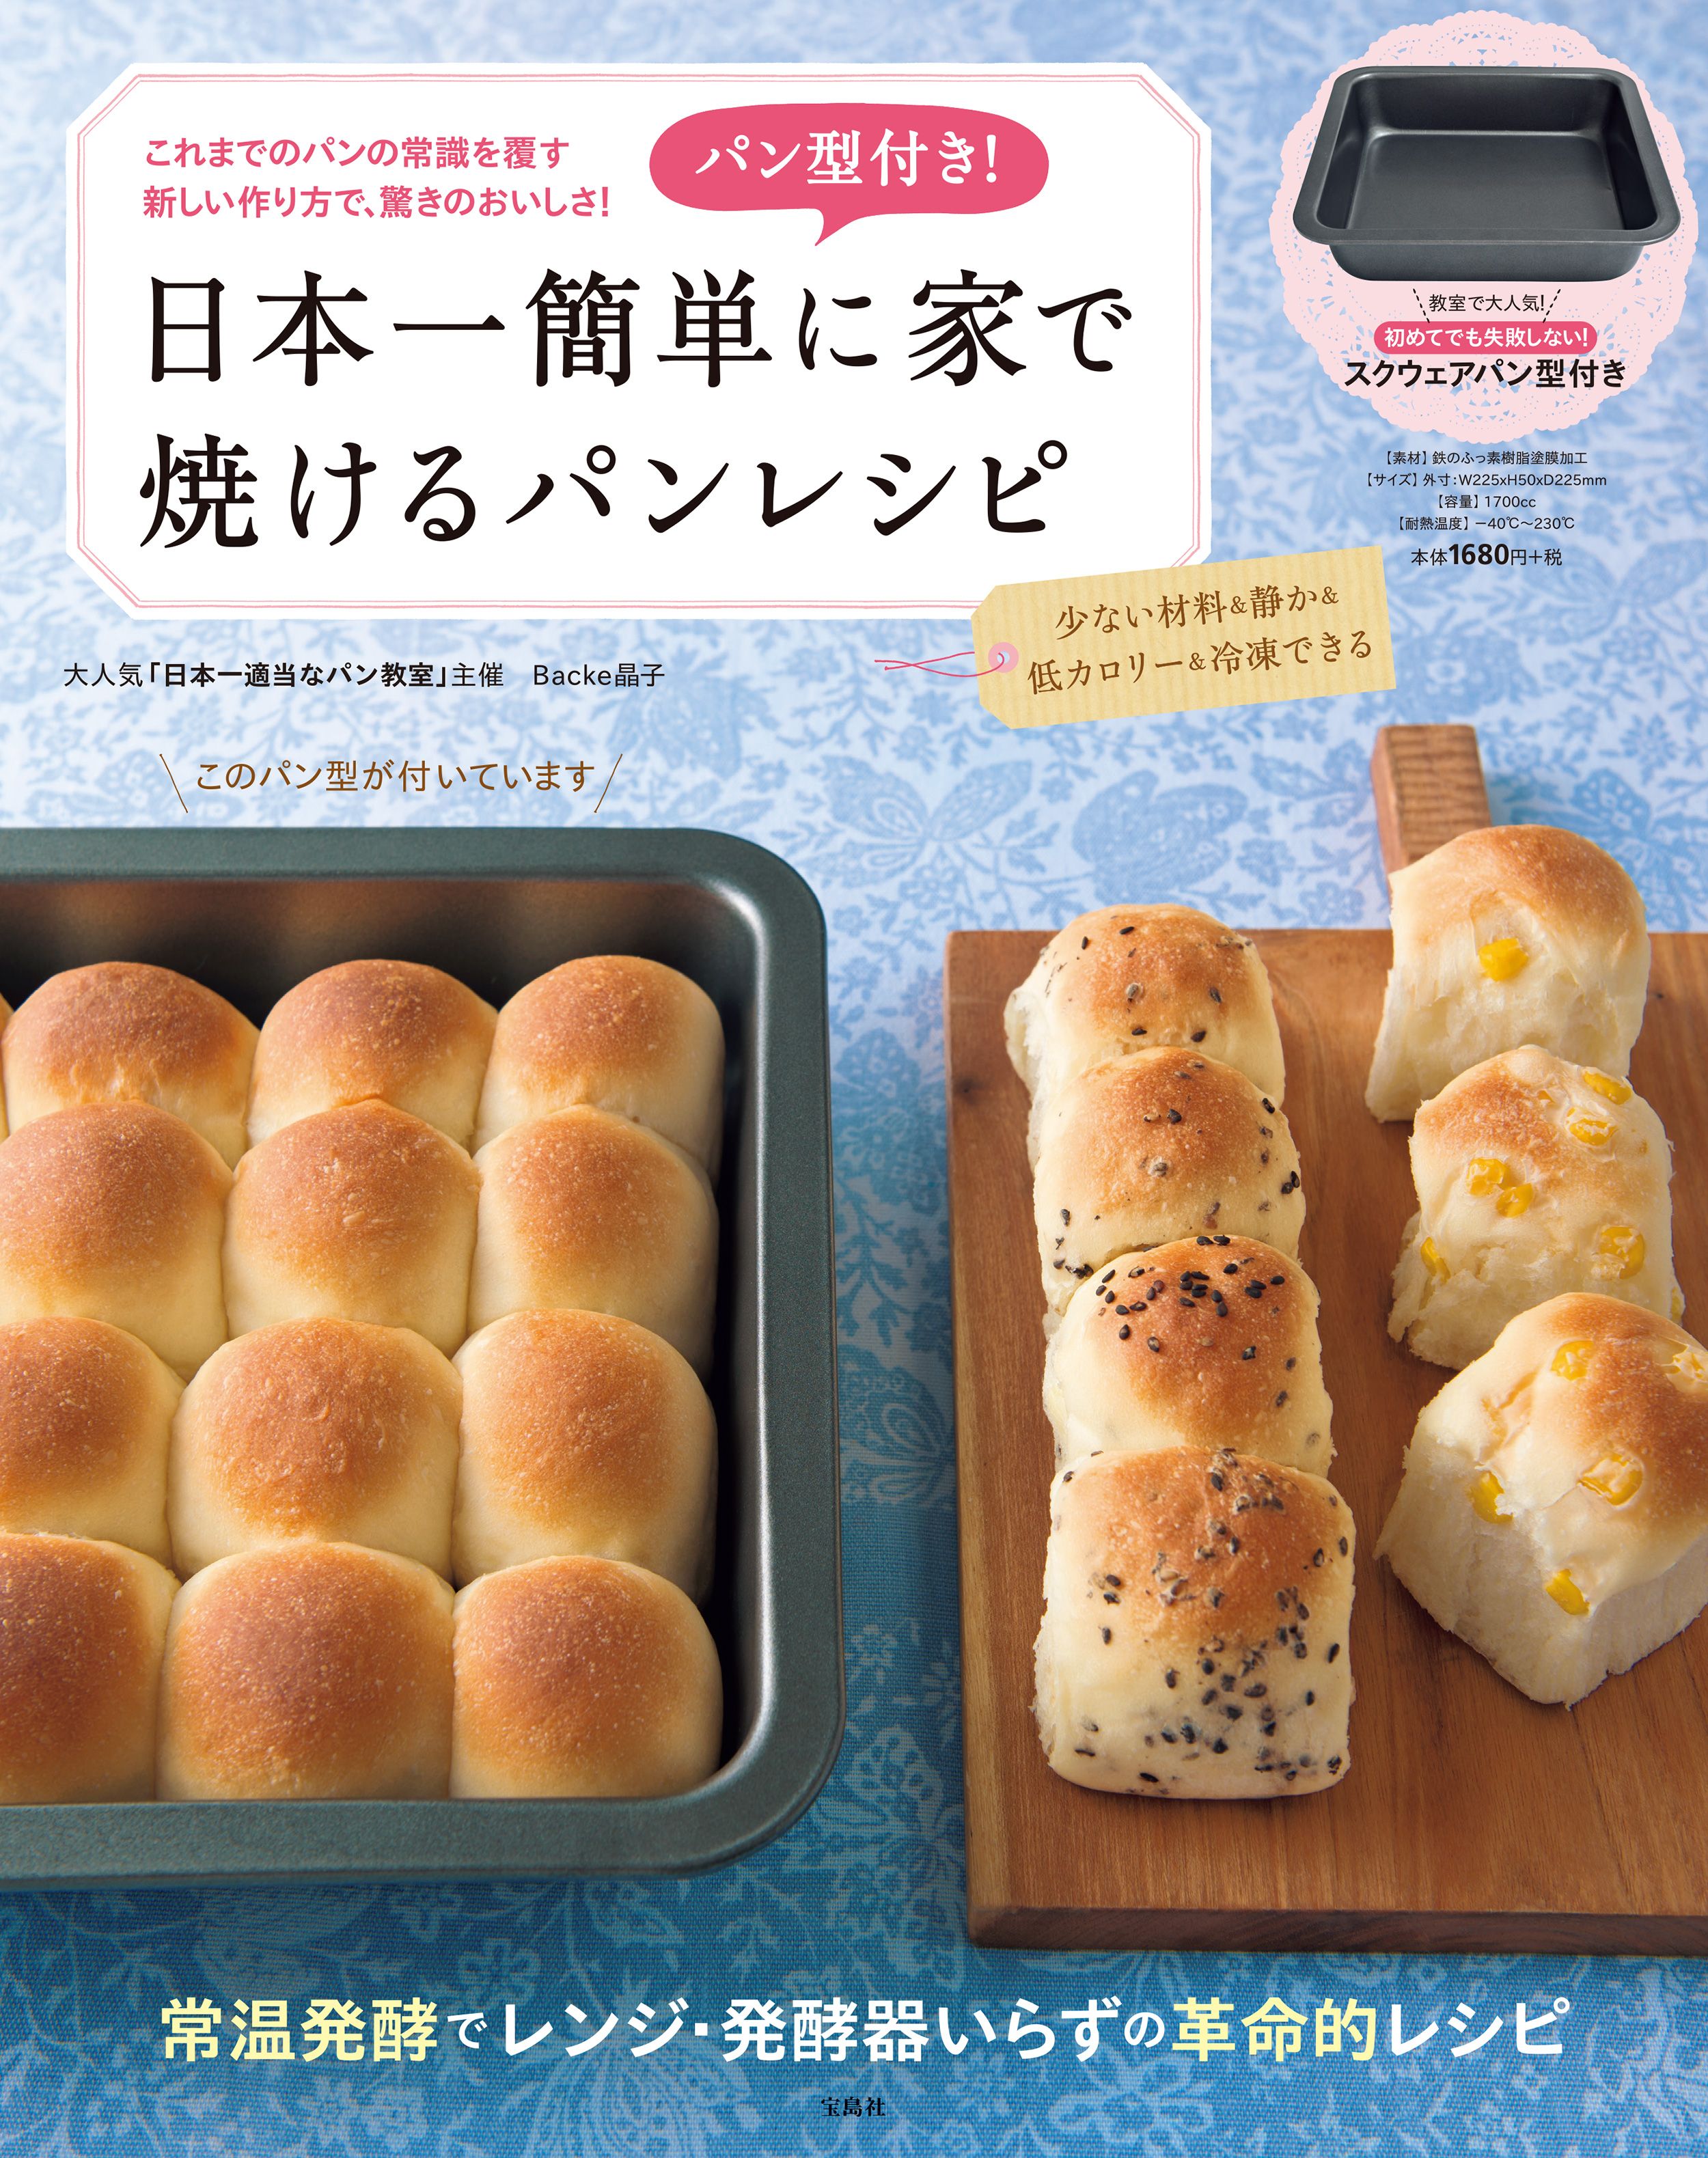 パン型付き 日本一簡単に家で焼けるパンレシピ 絵本ナビ Backe晶子 みんなの声 通販